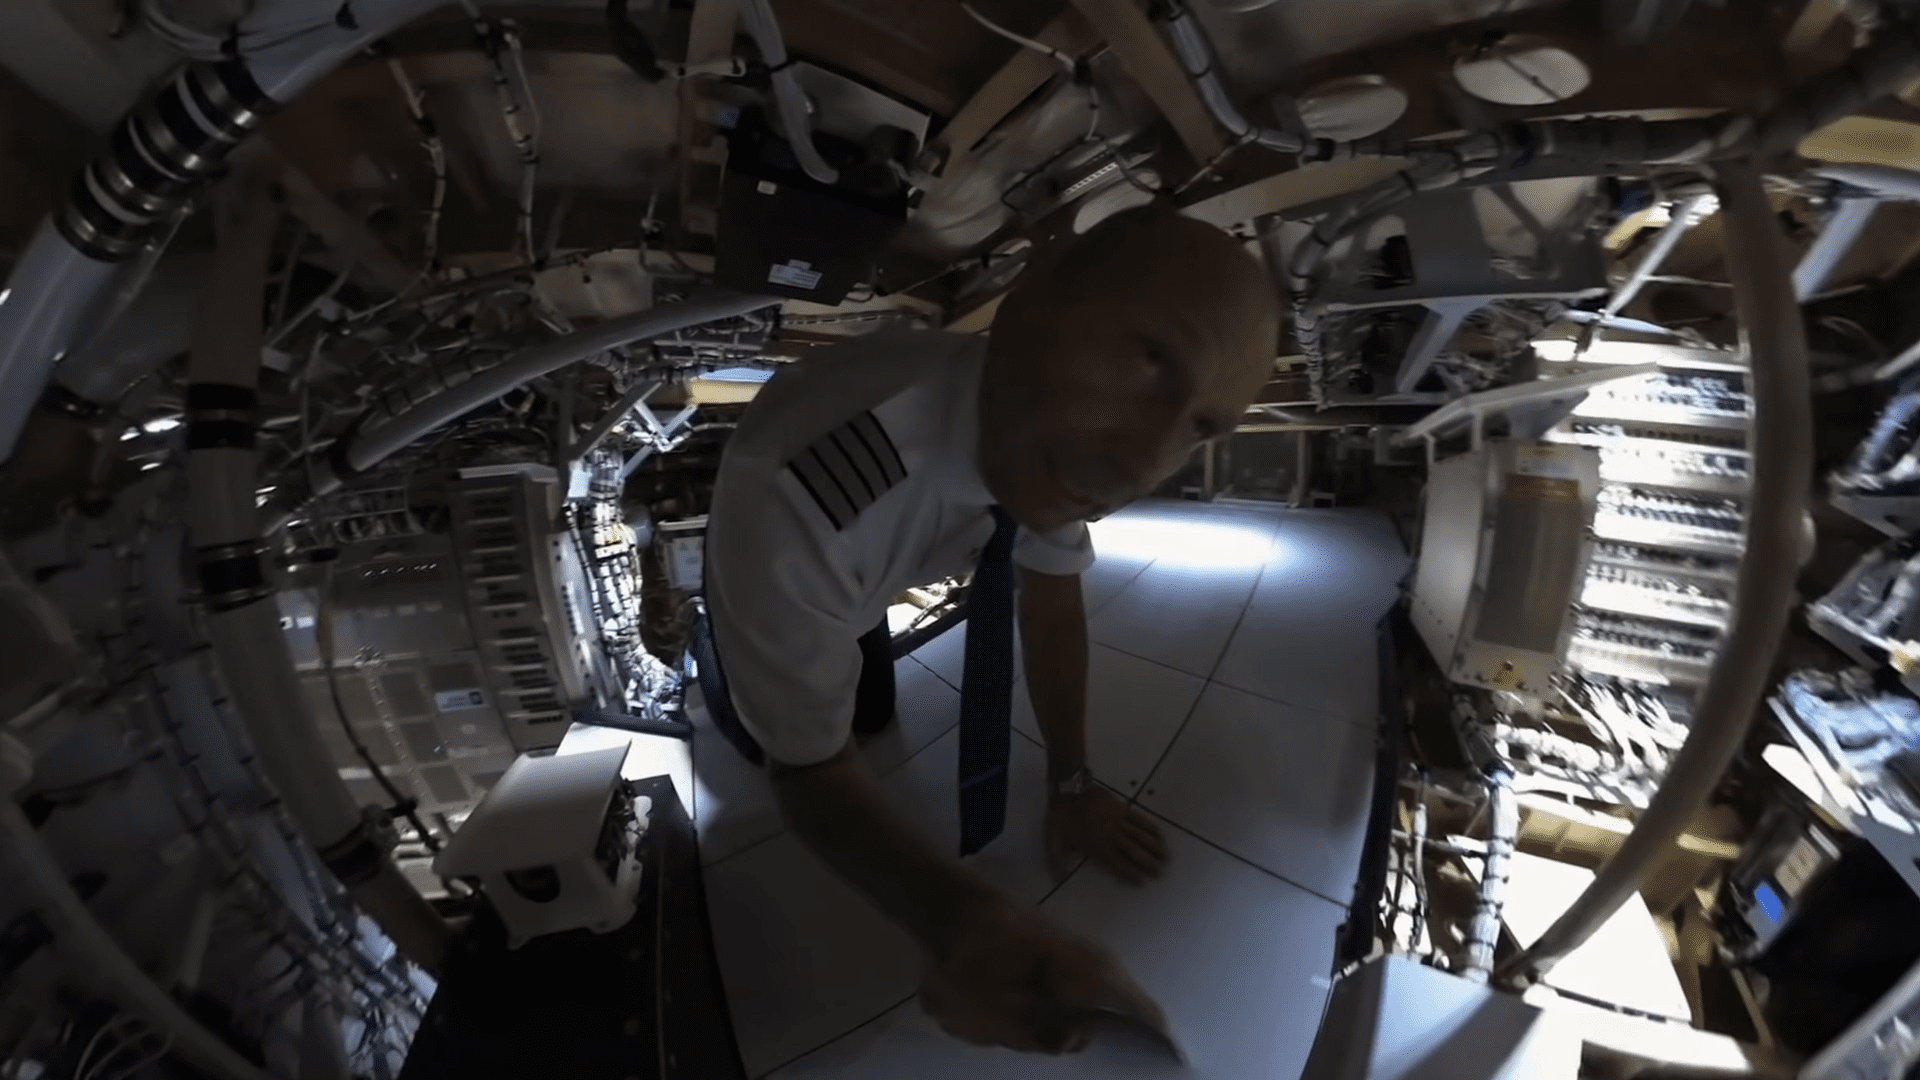 Video ini mengungkap rahasia Airbus 350, seperti ruang server di bawah kokpit